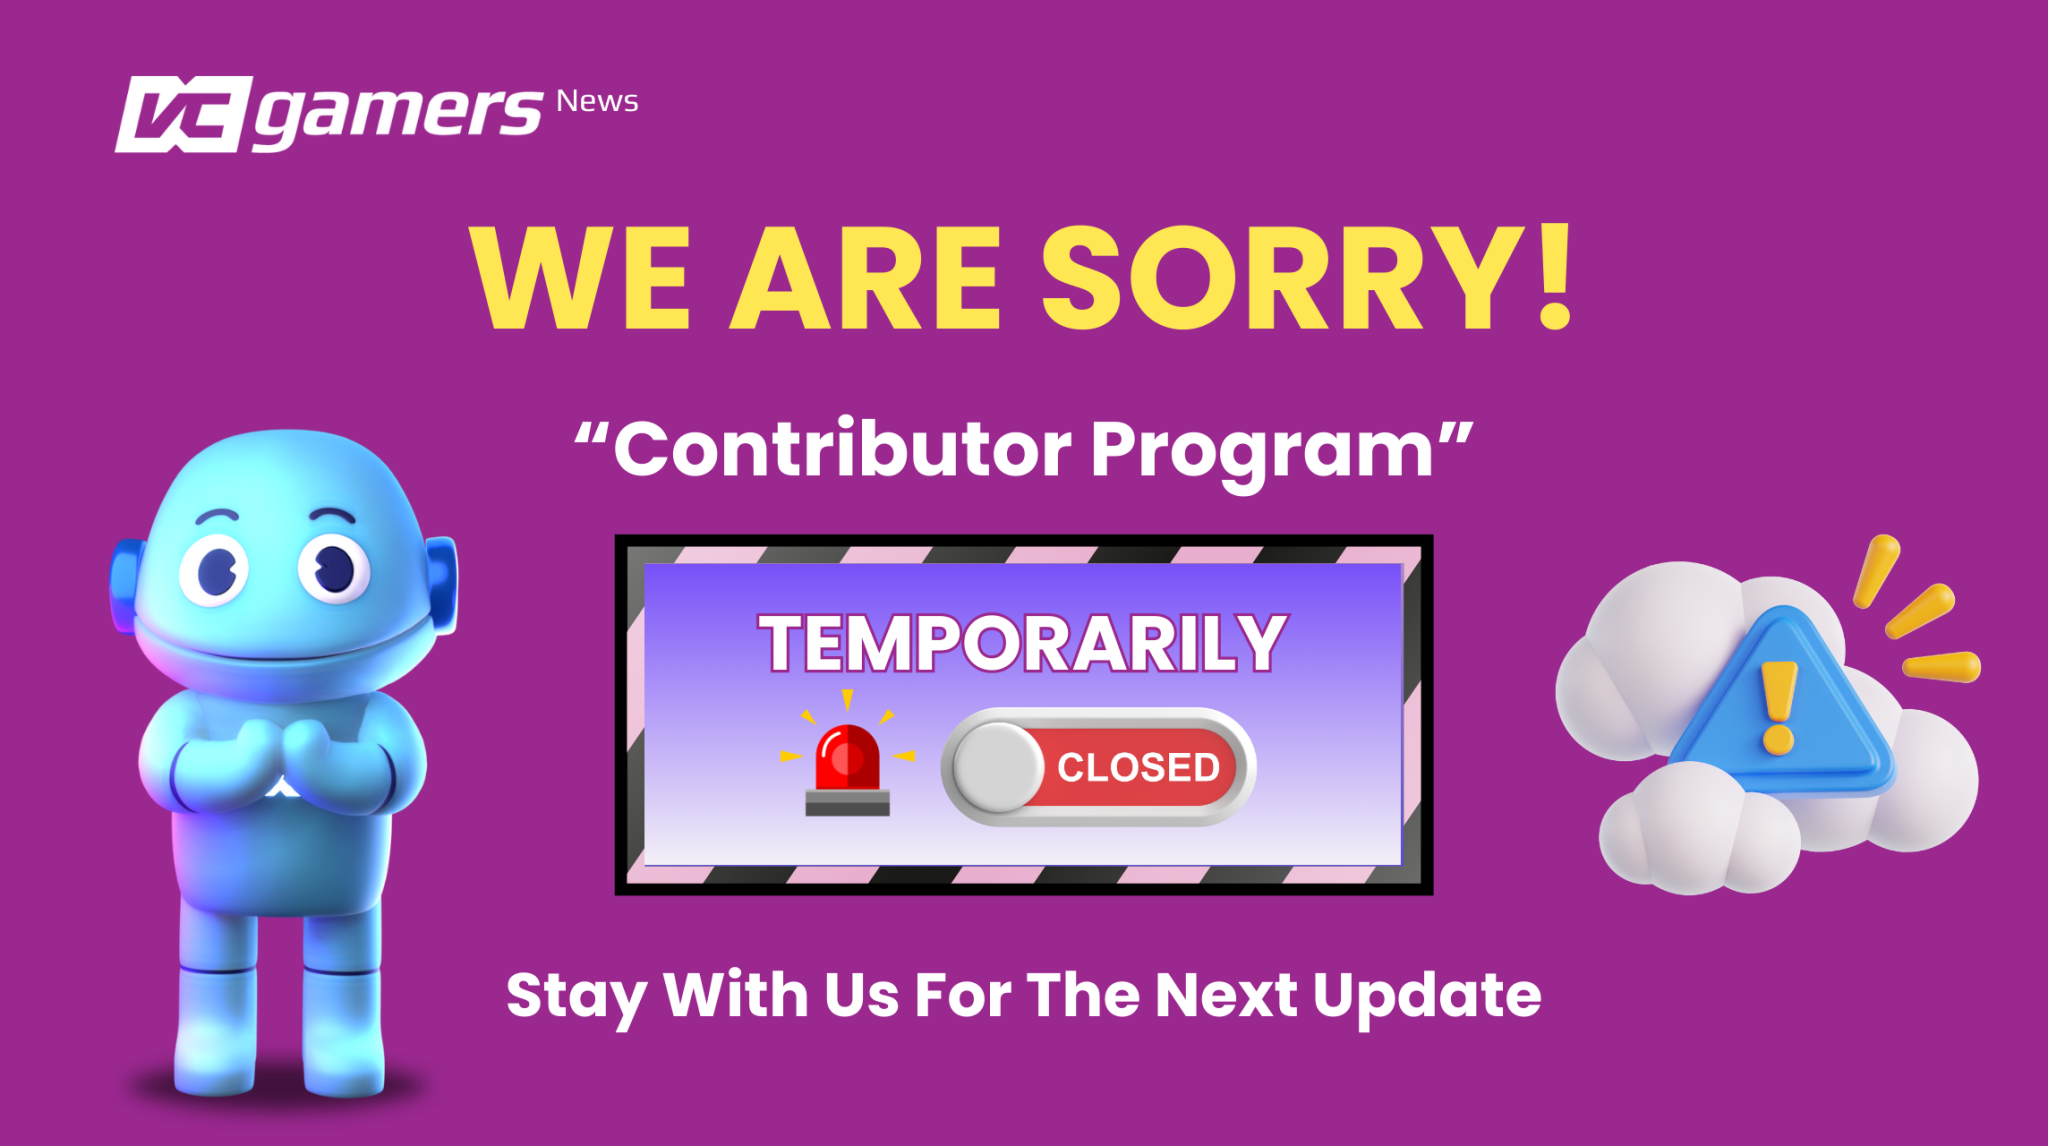 Der News-Contributor von vcgamers ist vorübergehend geschlossen